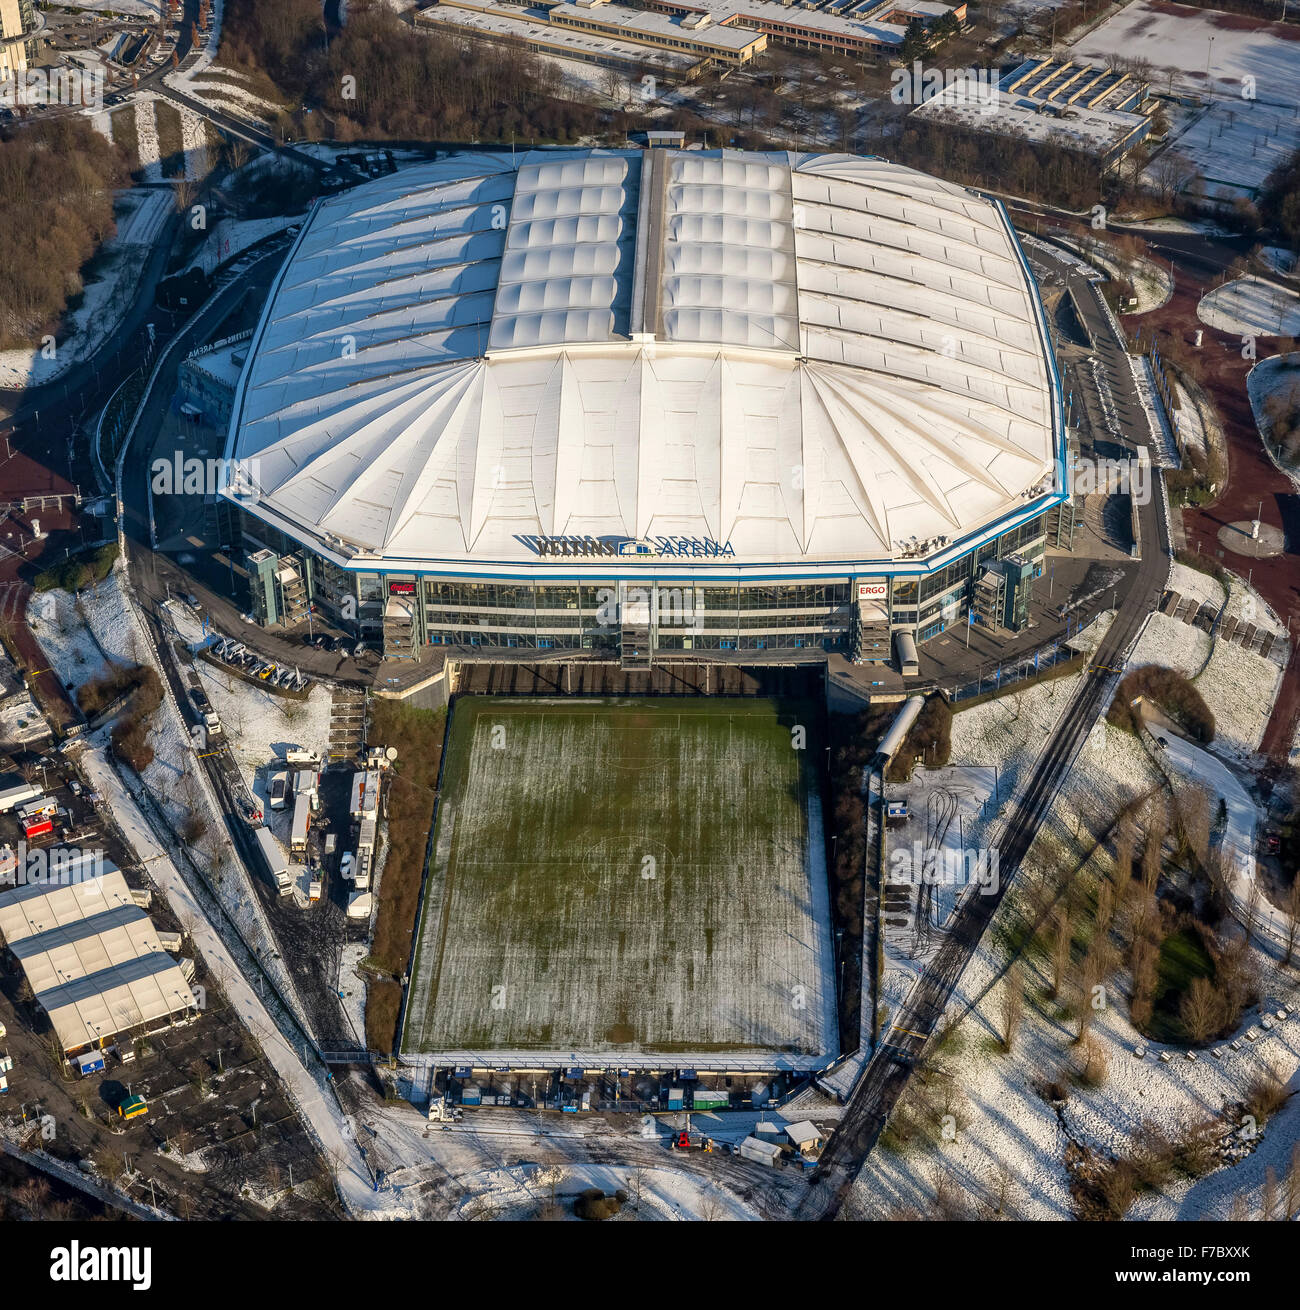 Veltins Arena in the winter, snow, Schalke Stadium, S04, Bundesliga club, Gelsenkirchen, Ruhr Area, North Rhine-Westphalia, Stock Photo